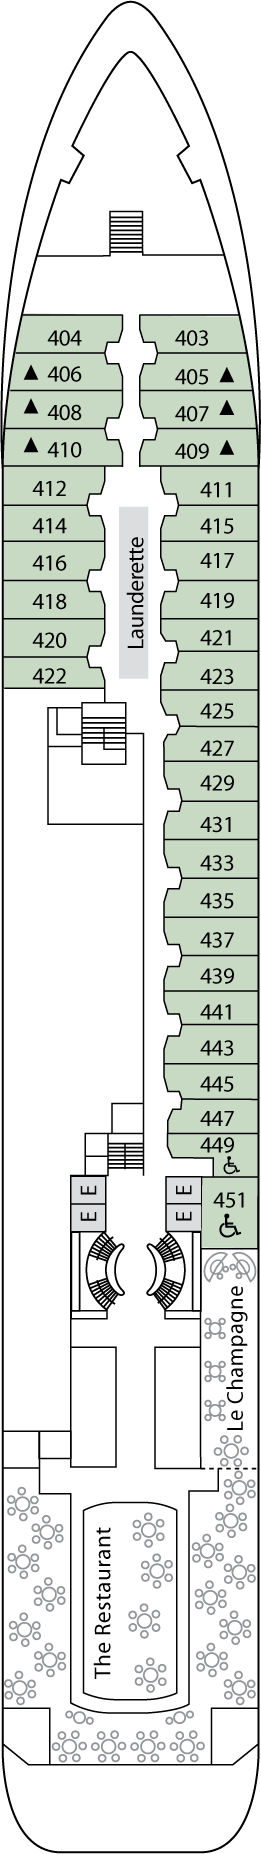 Deck 4 Deck Plan